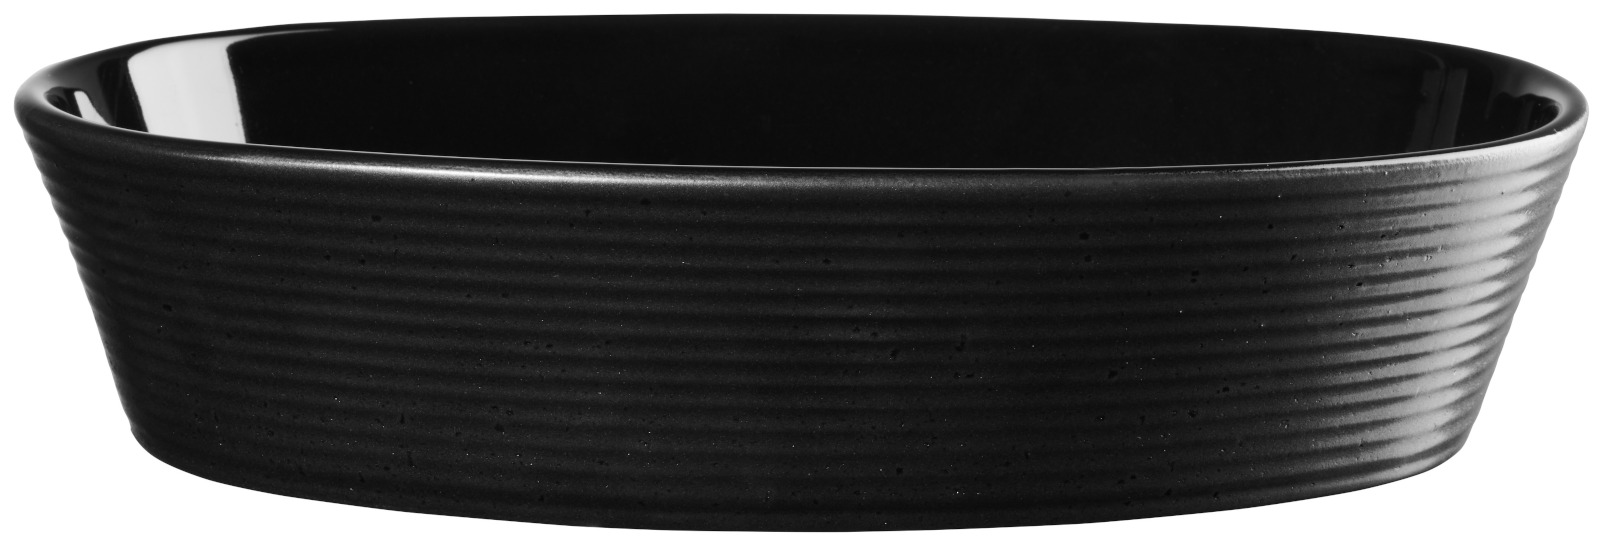 ASA kitchen'art Auflaufform oval black 25cm